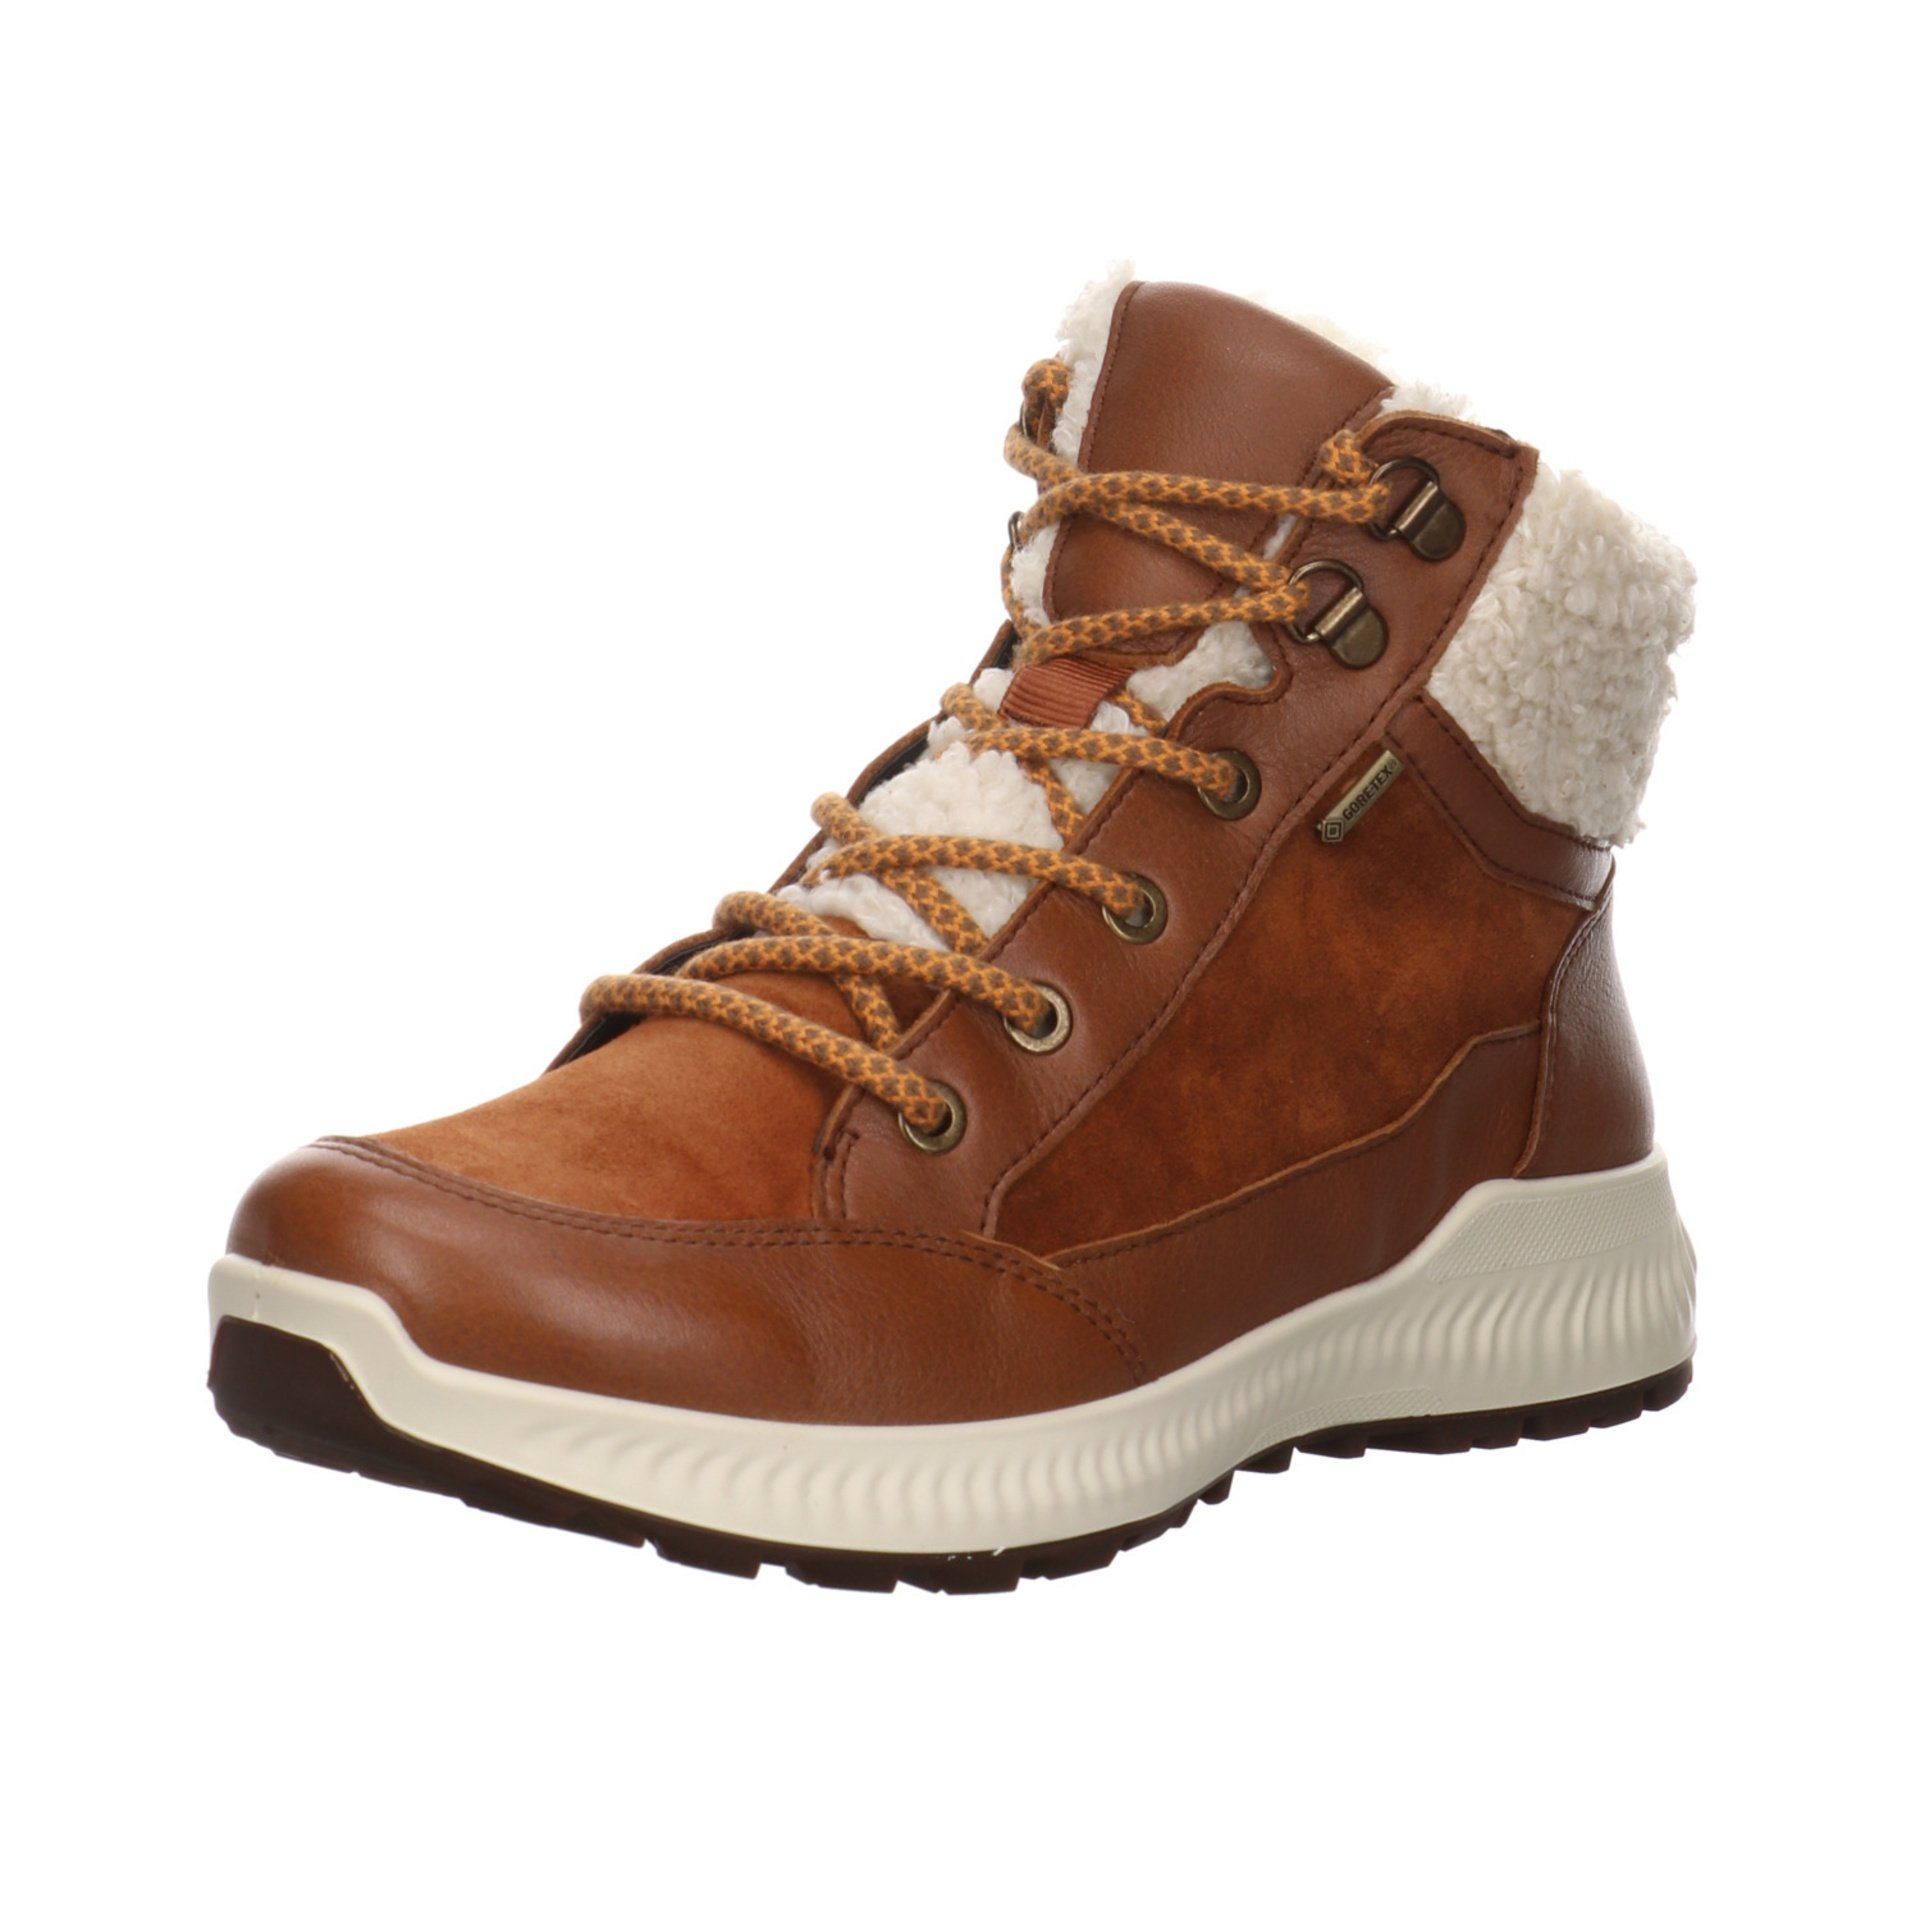 Ara Damen Stiefel Schuhe Hiker Boots Elegant Freizeit Stiefelette Leder-/Textilkombination braun 046745